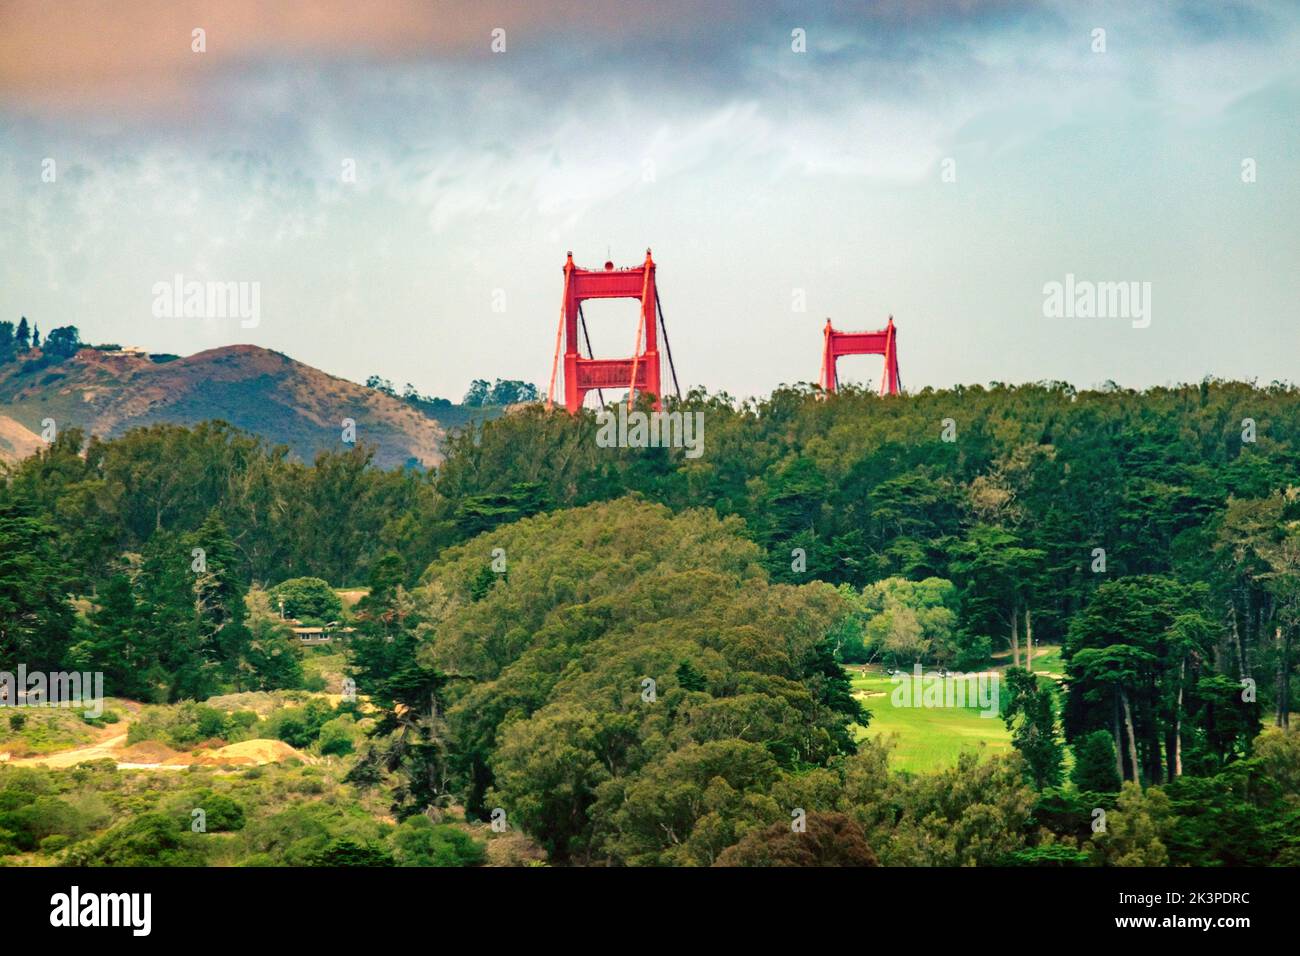 Vista parziale delle torri alte 746 piedi del Golden Gate Bridge da dietro gli alberi, con un campo da golf in primo piano, San Francisco, Califor Foto Stock